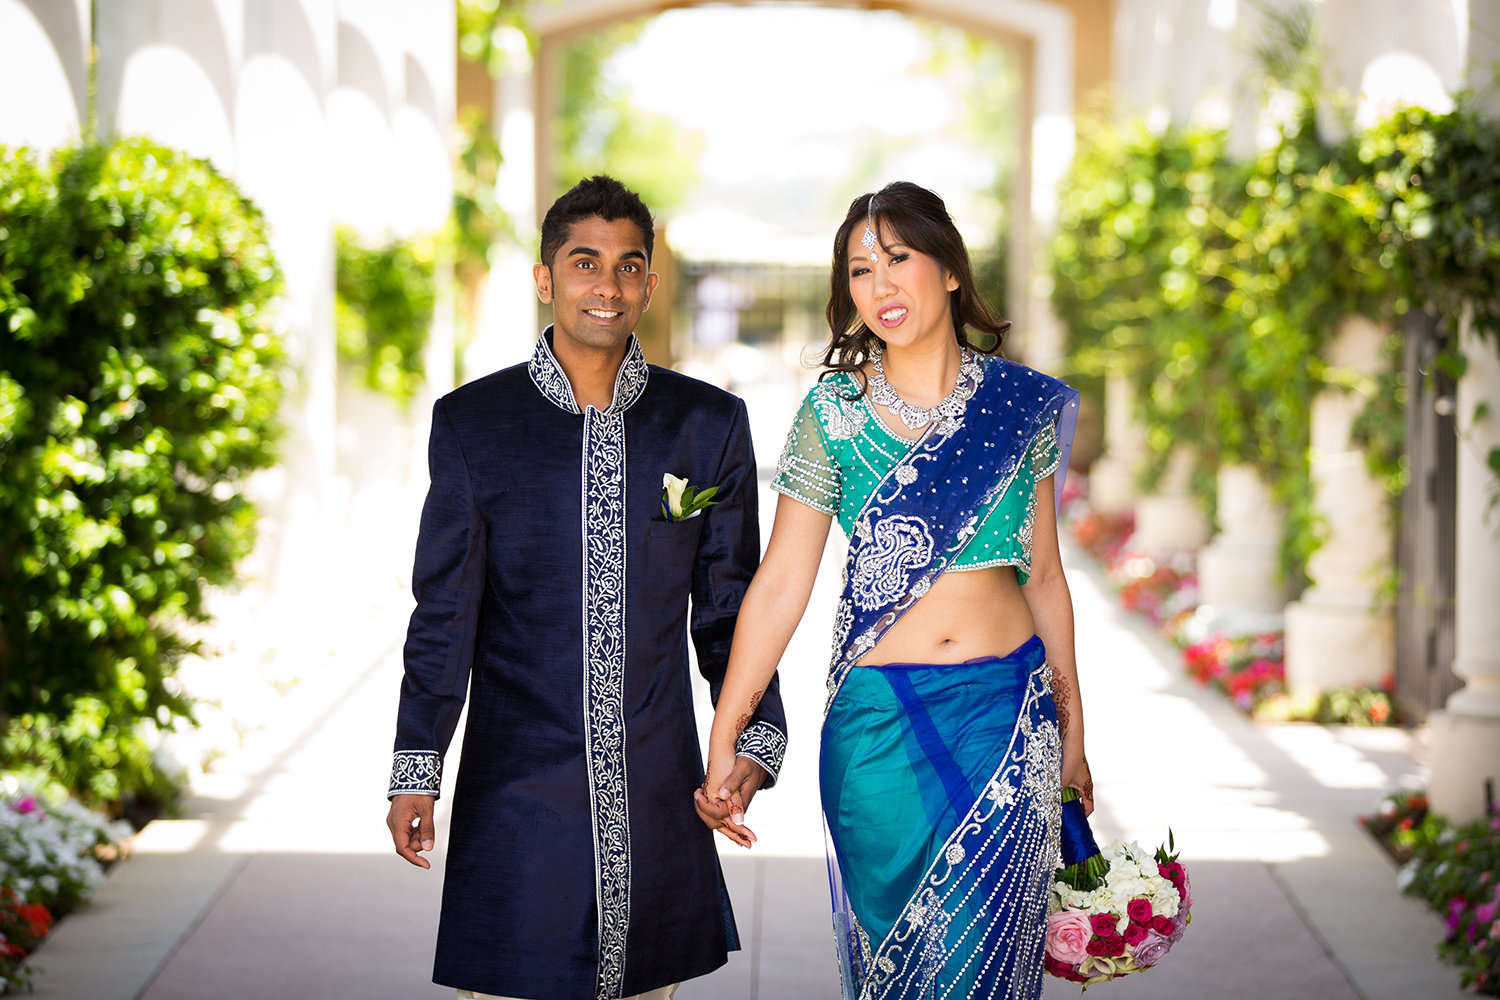 Bright Blue and Green Sari at a Hindu Wedding